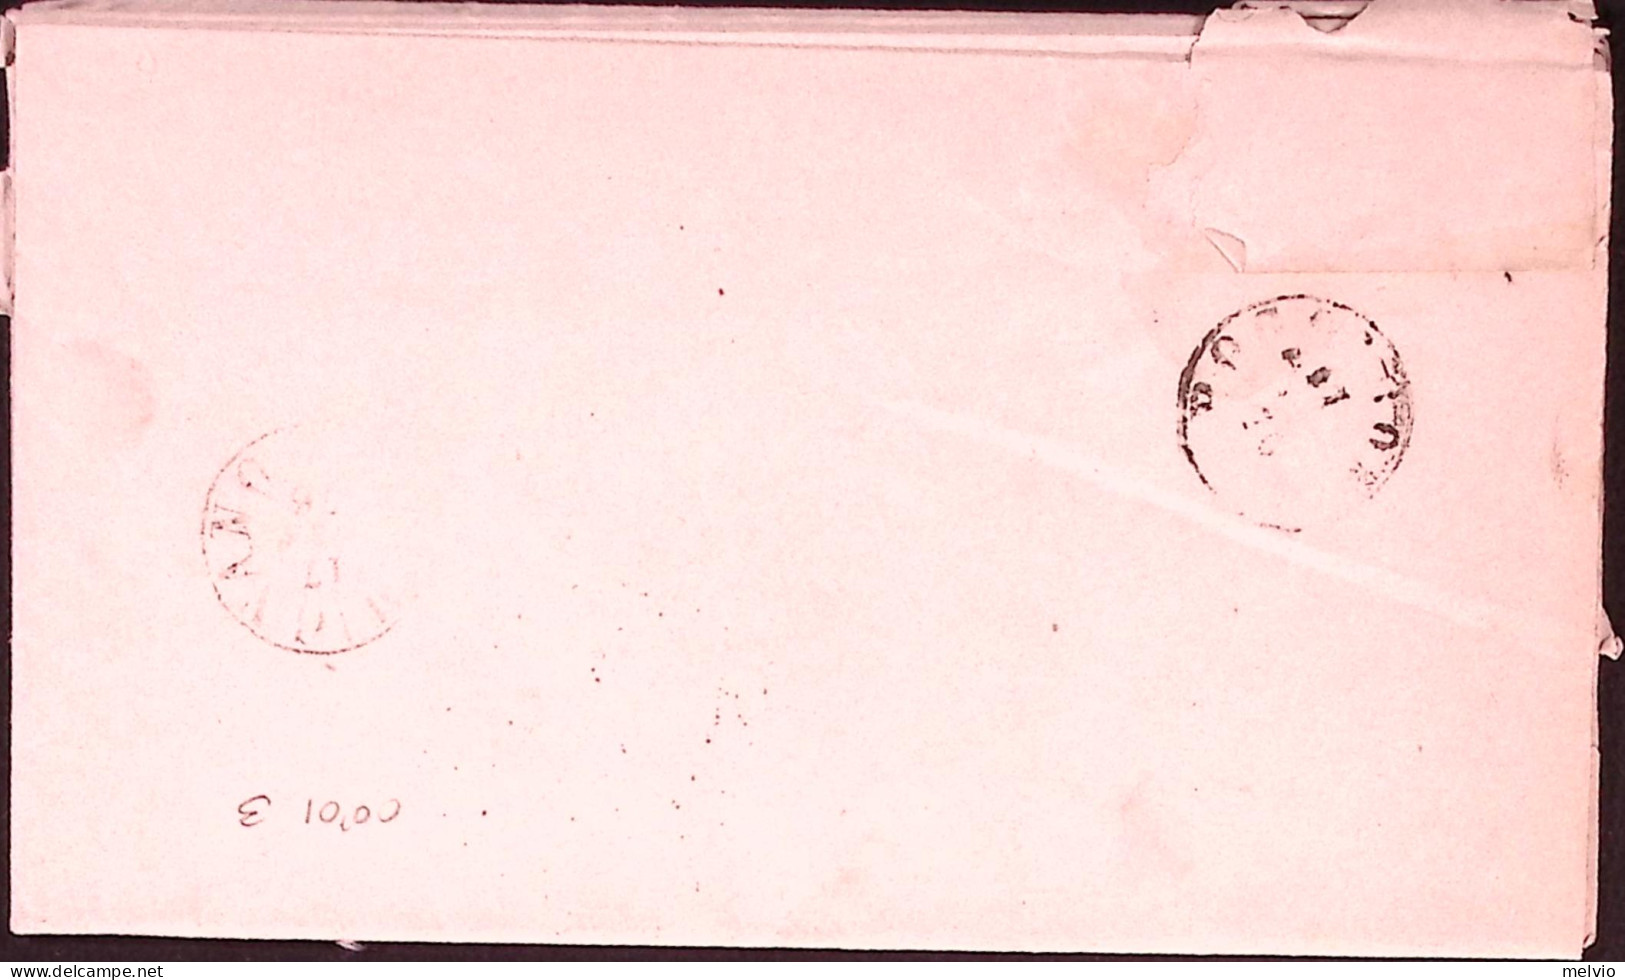 1876-CERTALDO C1 + Punti (17.1) Su Piego Affrancato Coppia Effigie C.5 - Marcophilie